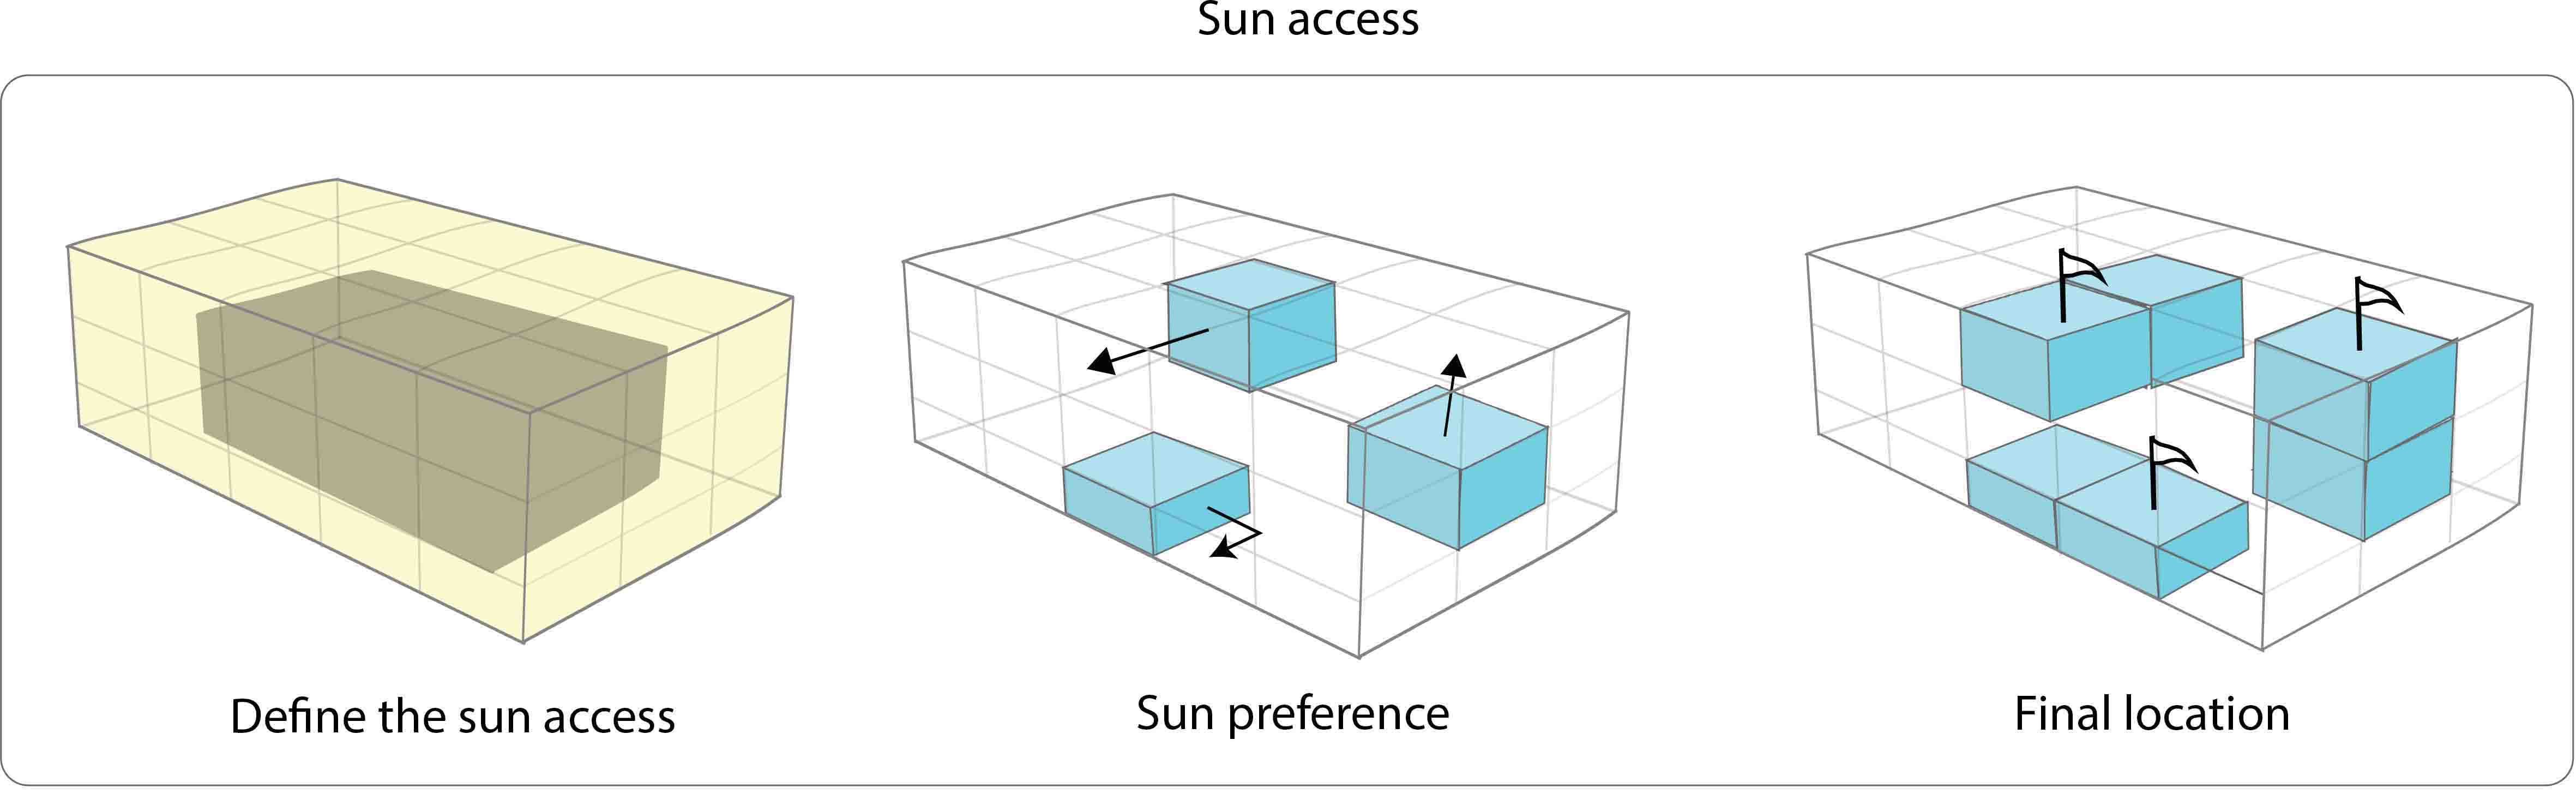 Sun access